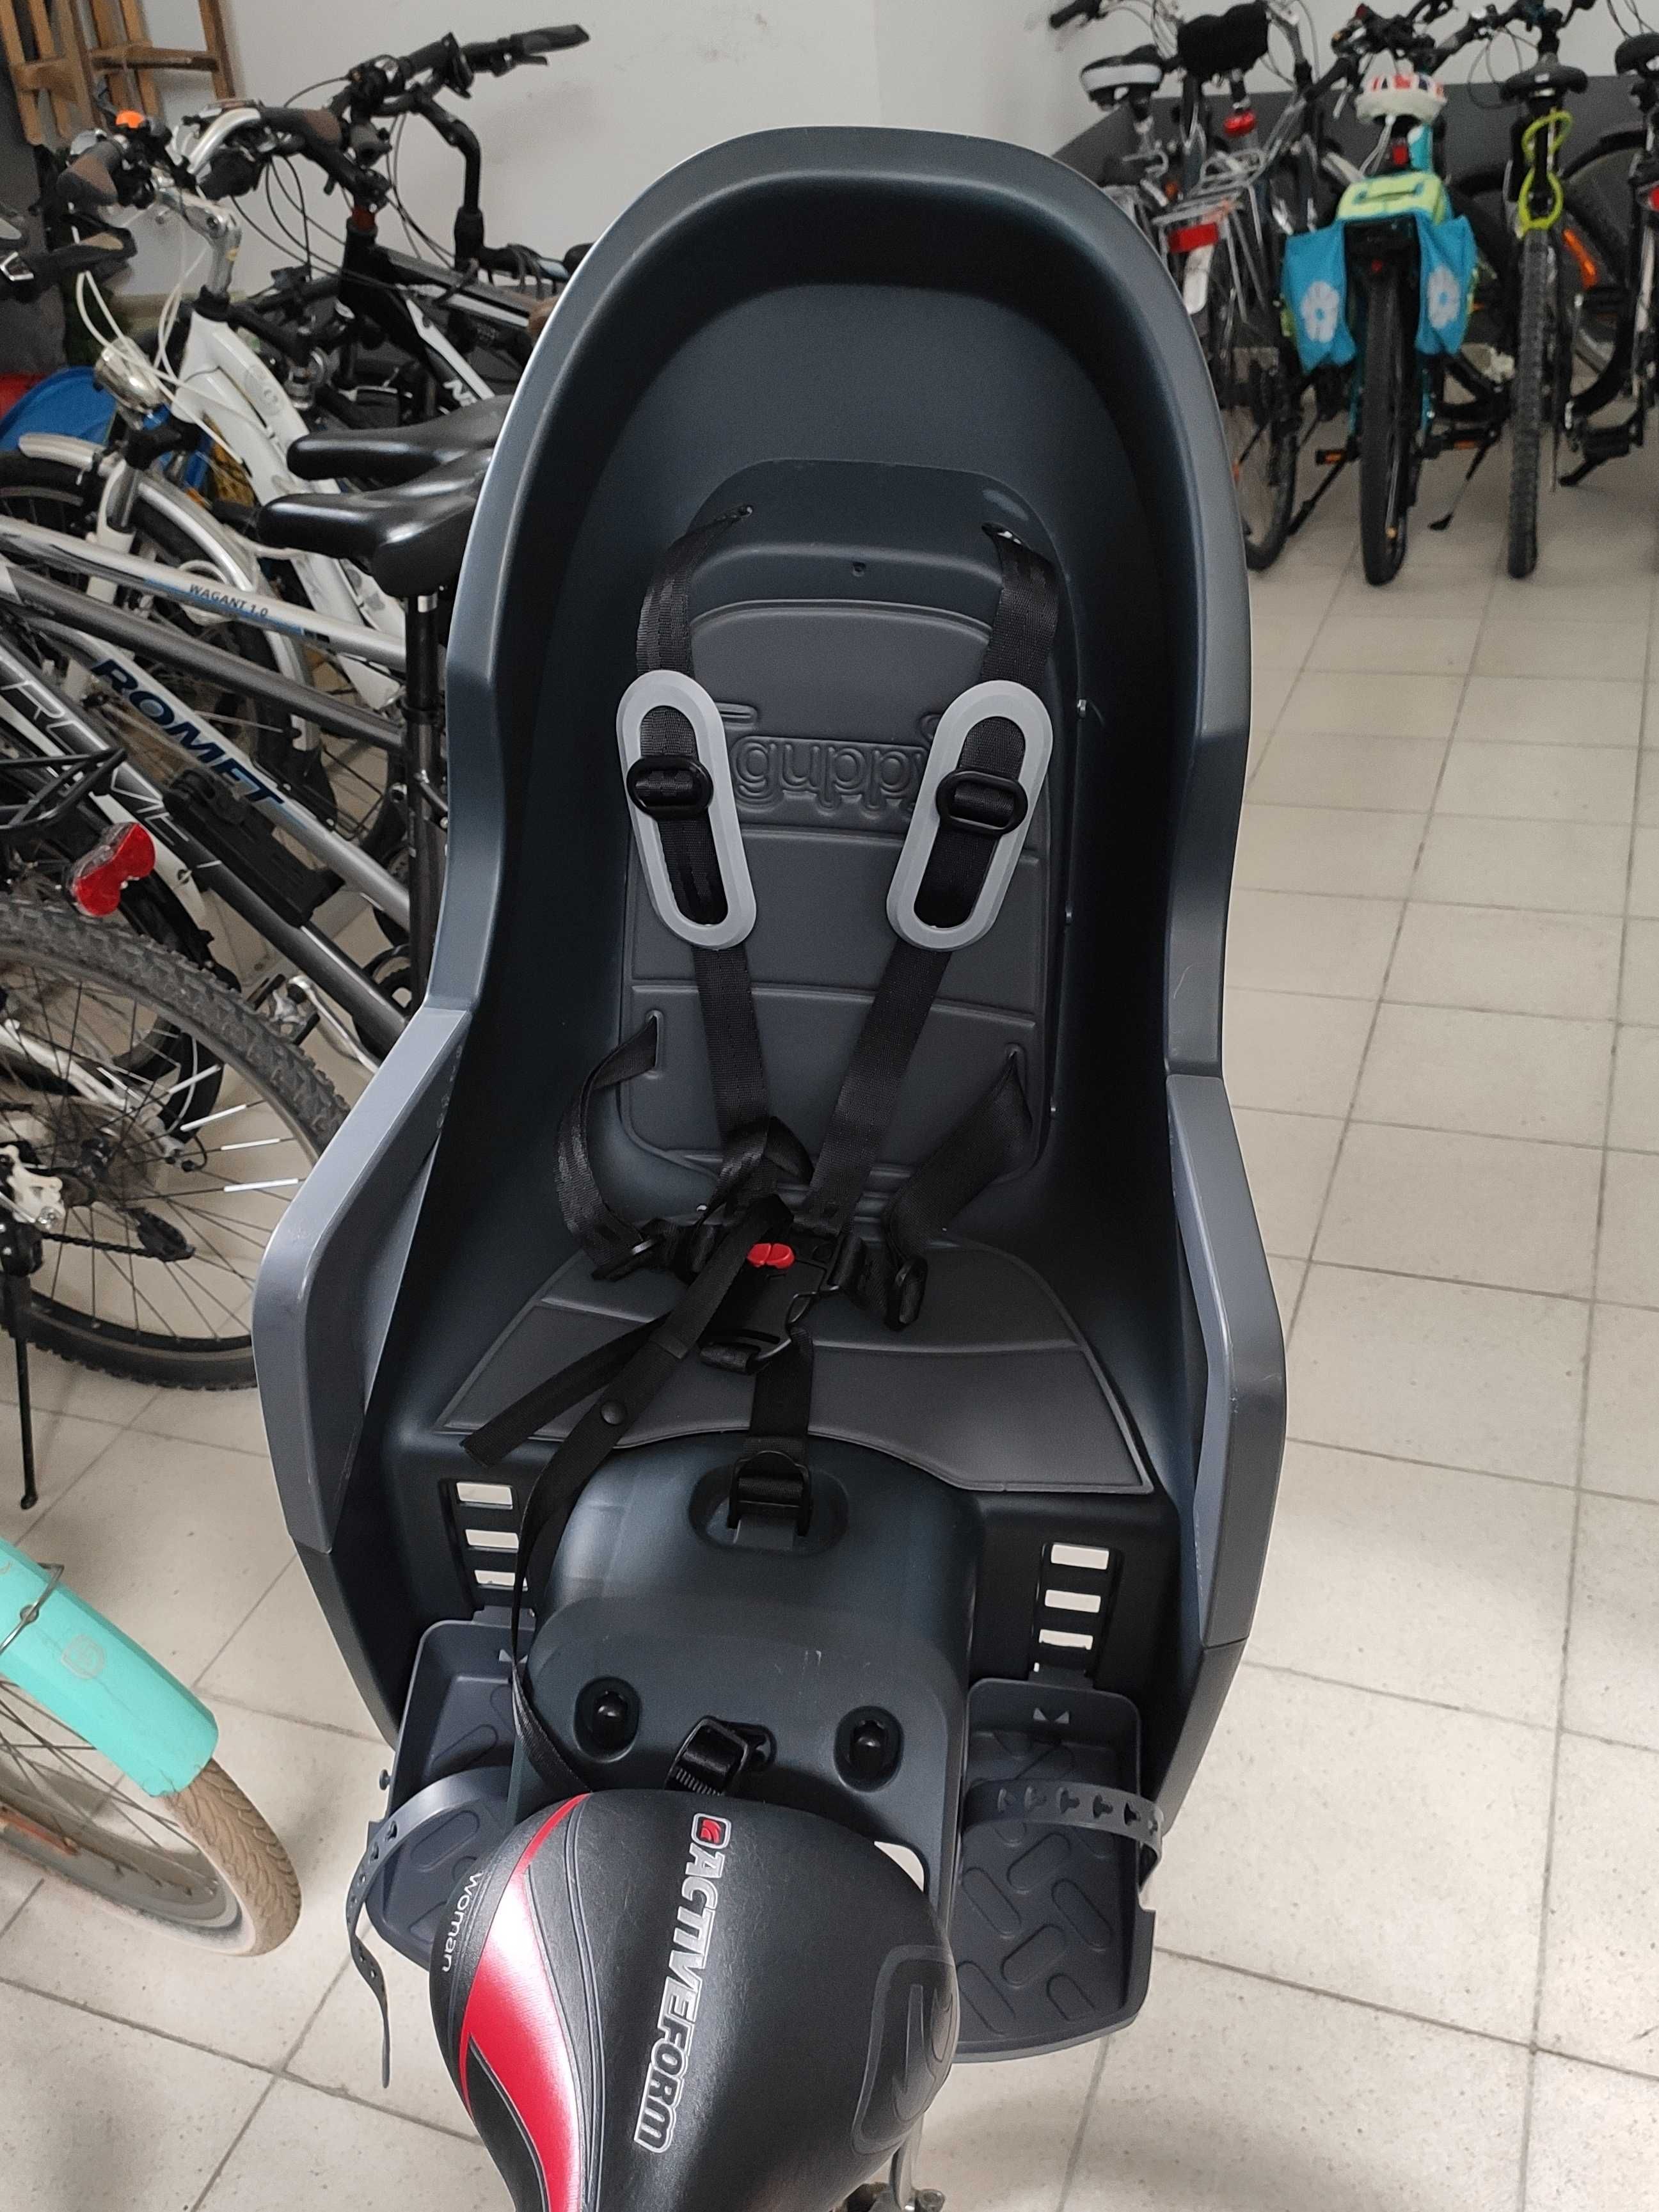 Kross Guppy RS (nie używany) - fotelik rowerowy na ramę